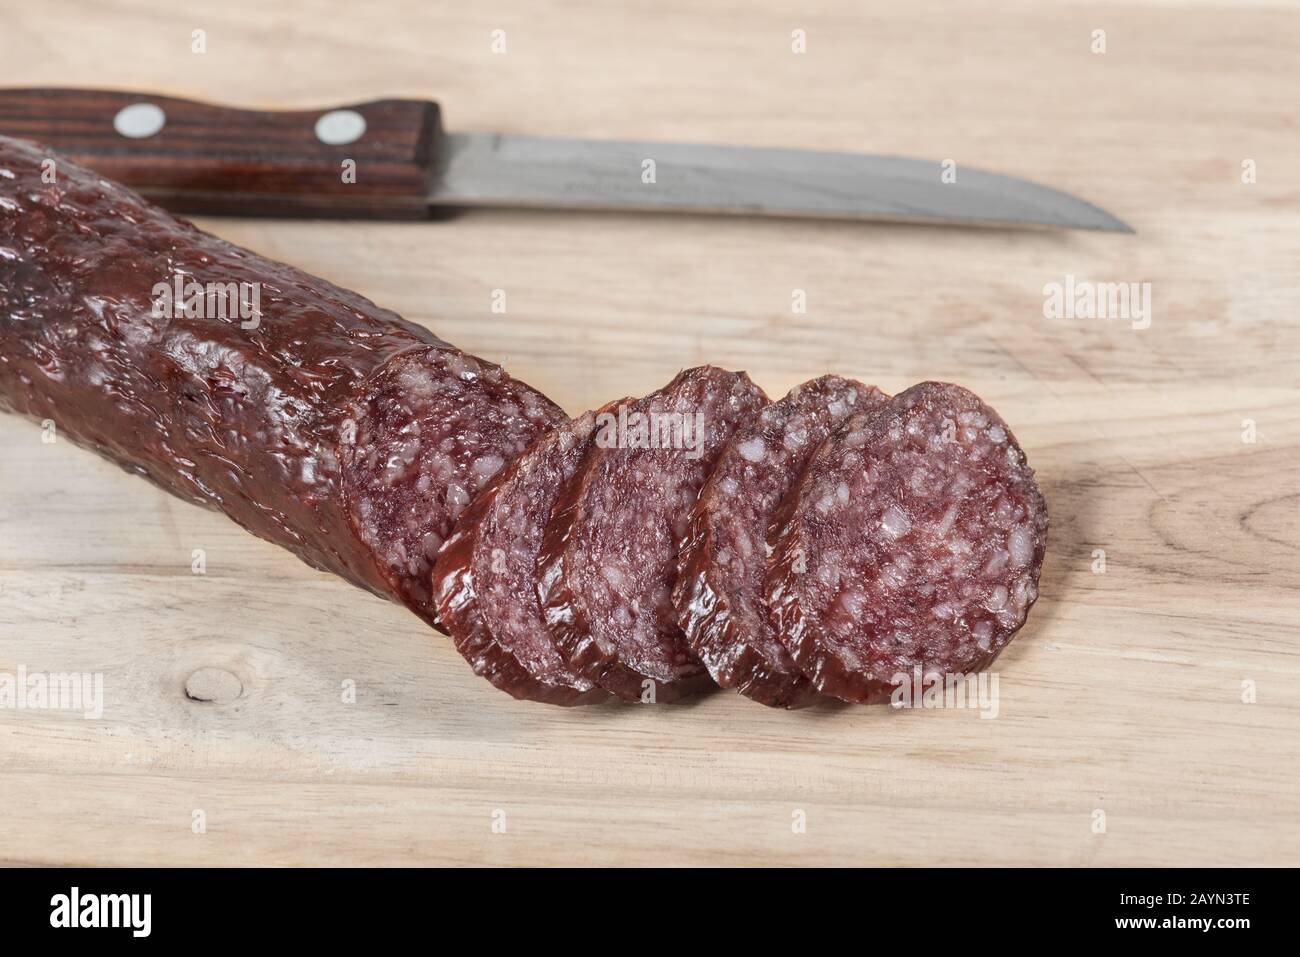 Barra de salchichas de salami en grasa seca y cuchillo en tabla de madera con rodajas. Primer plano. Vista superior Foto de stock